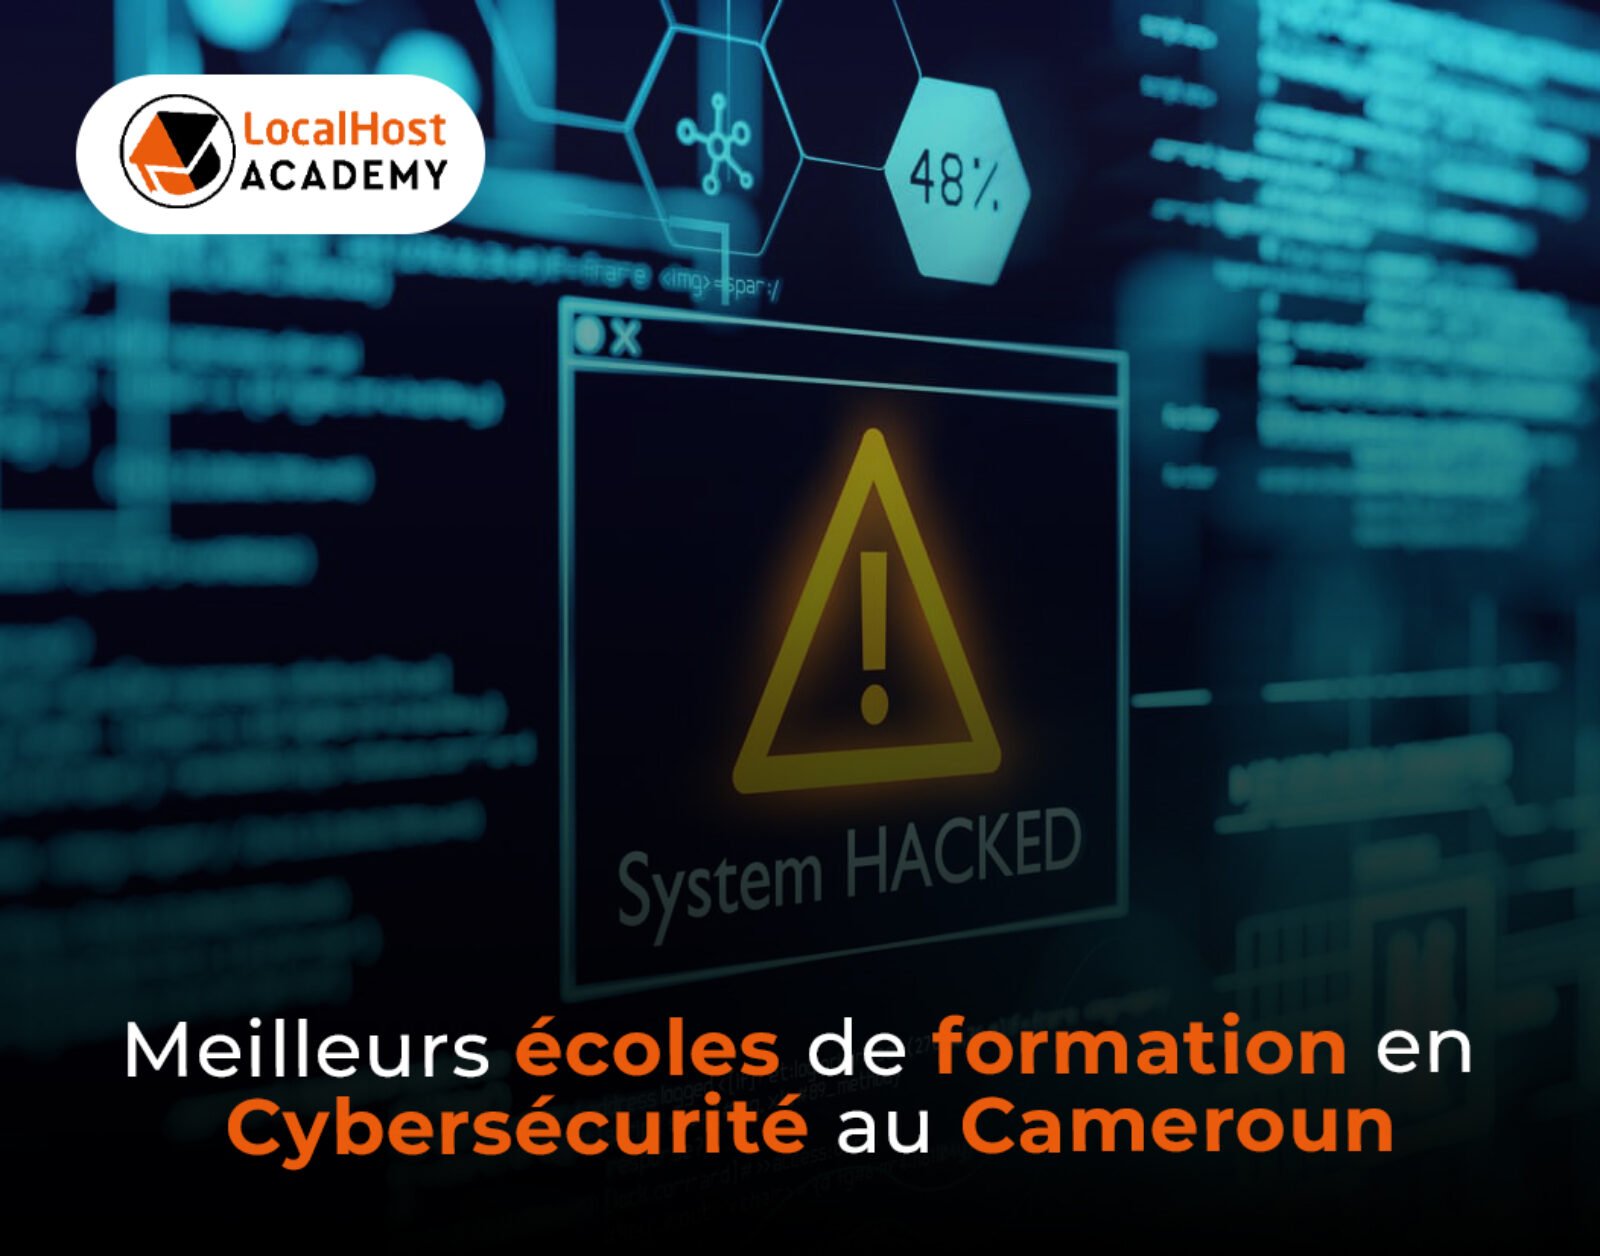 Les meilleures écoles de formation en cybersécurité au Cameroun